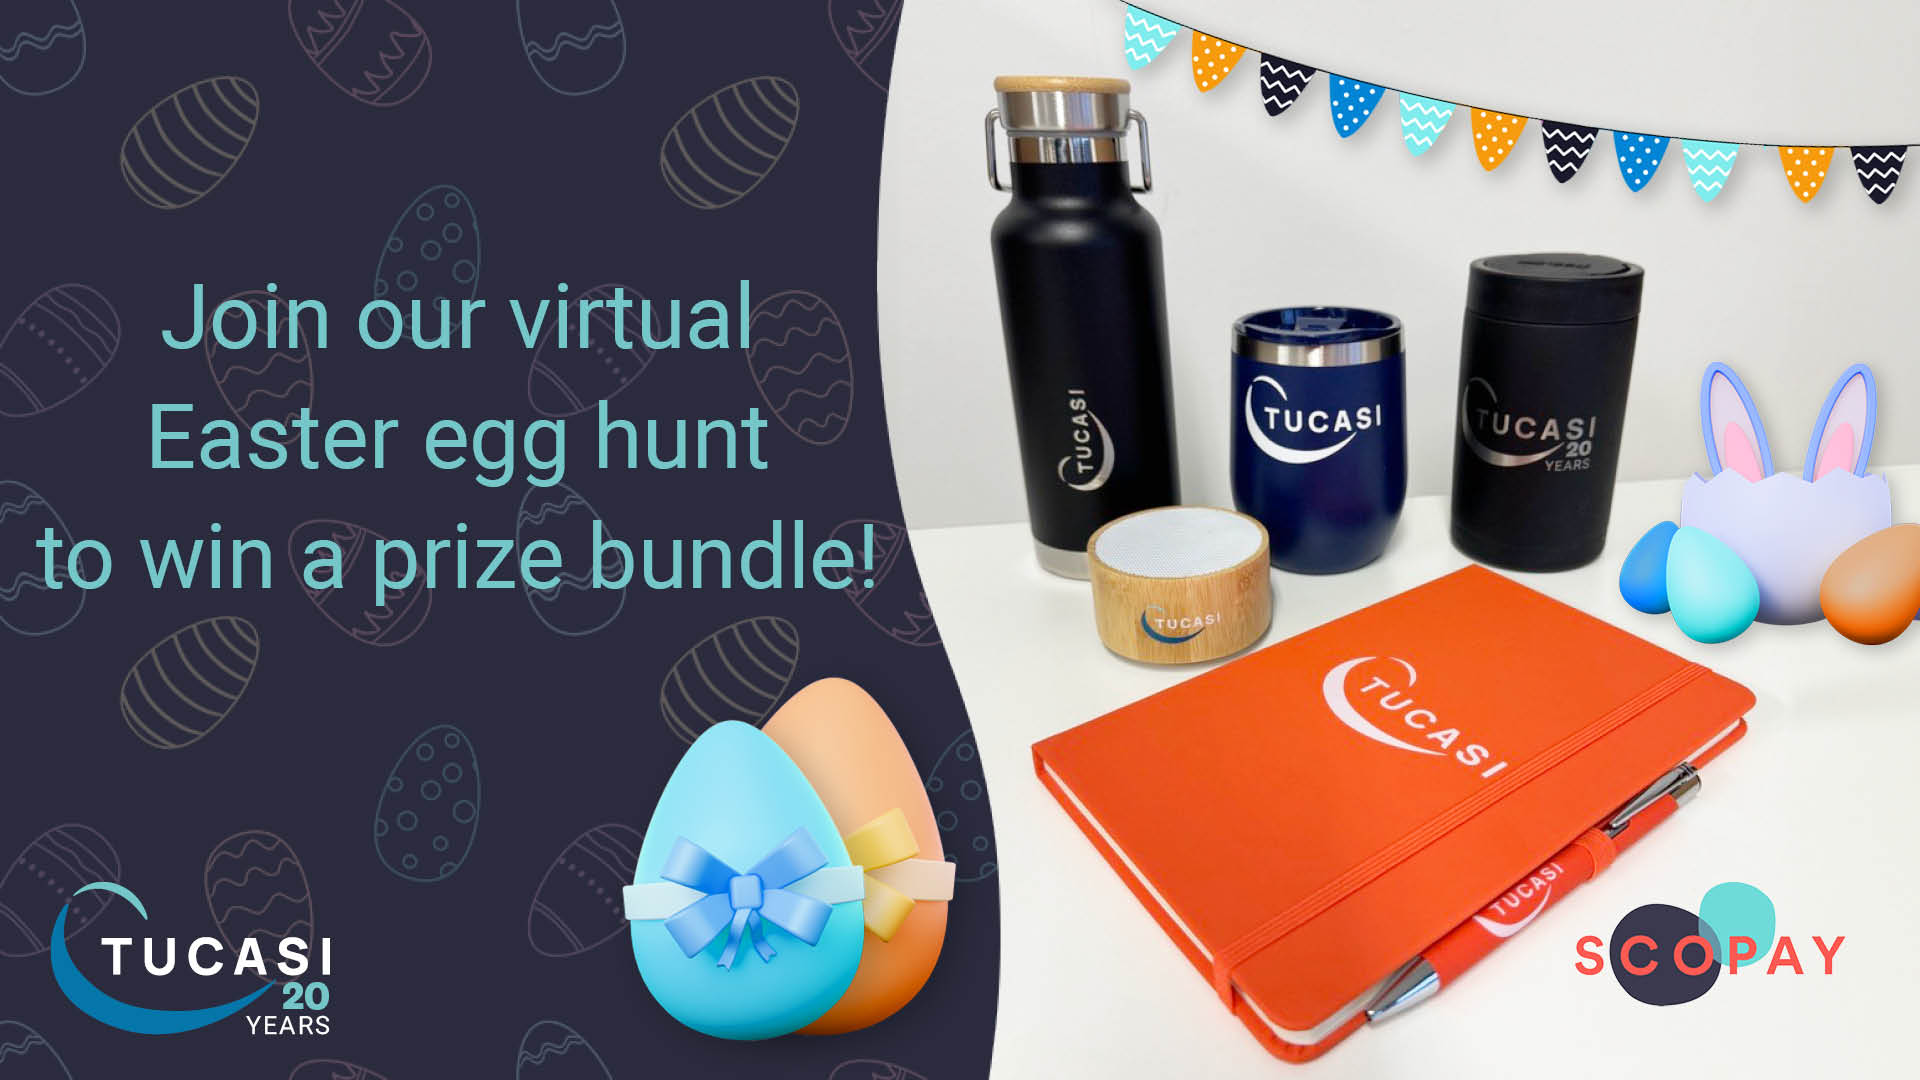 Tucasi branded prizes for virtual Easter egg hunt